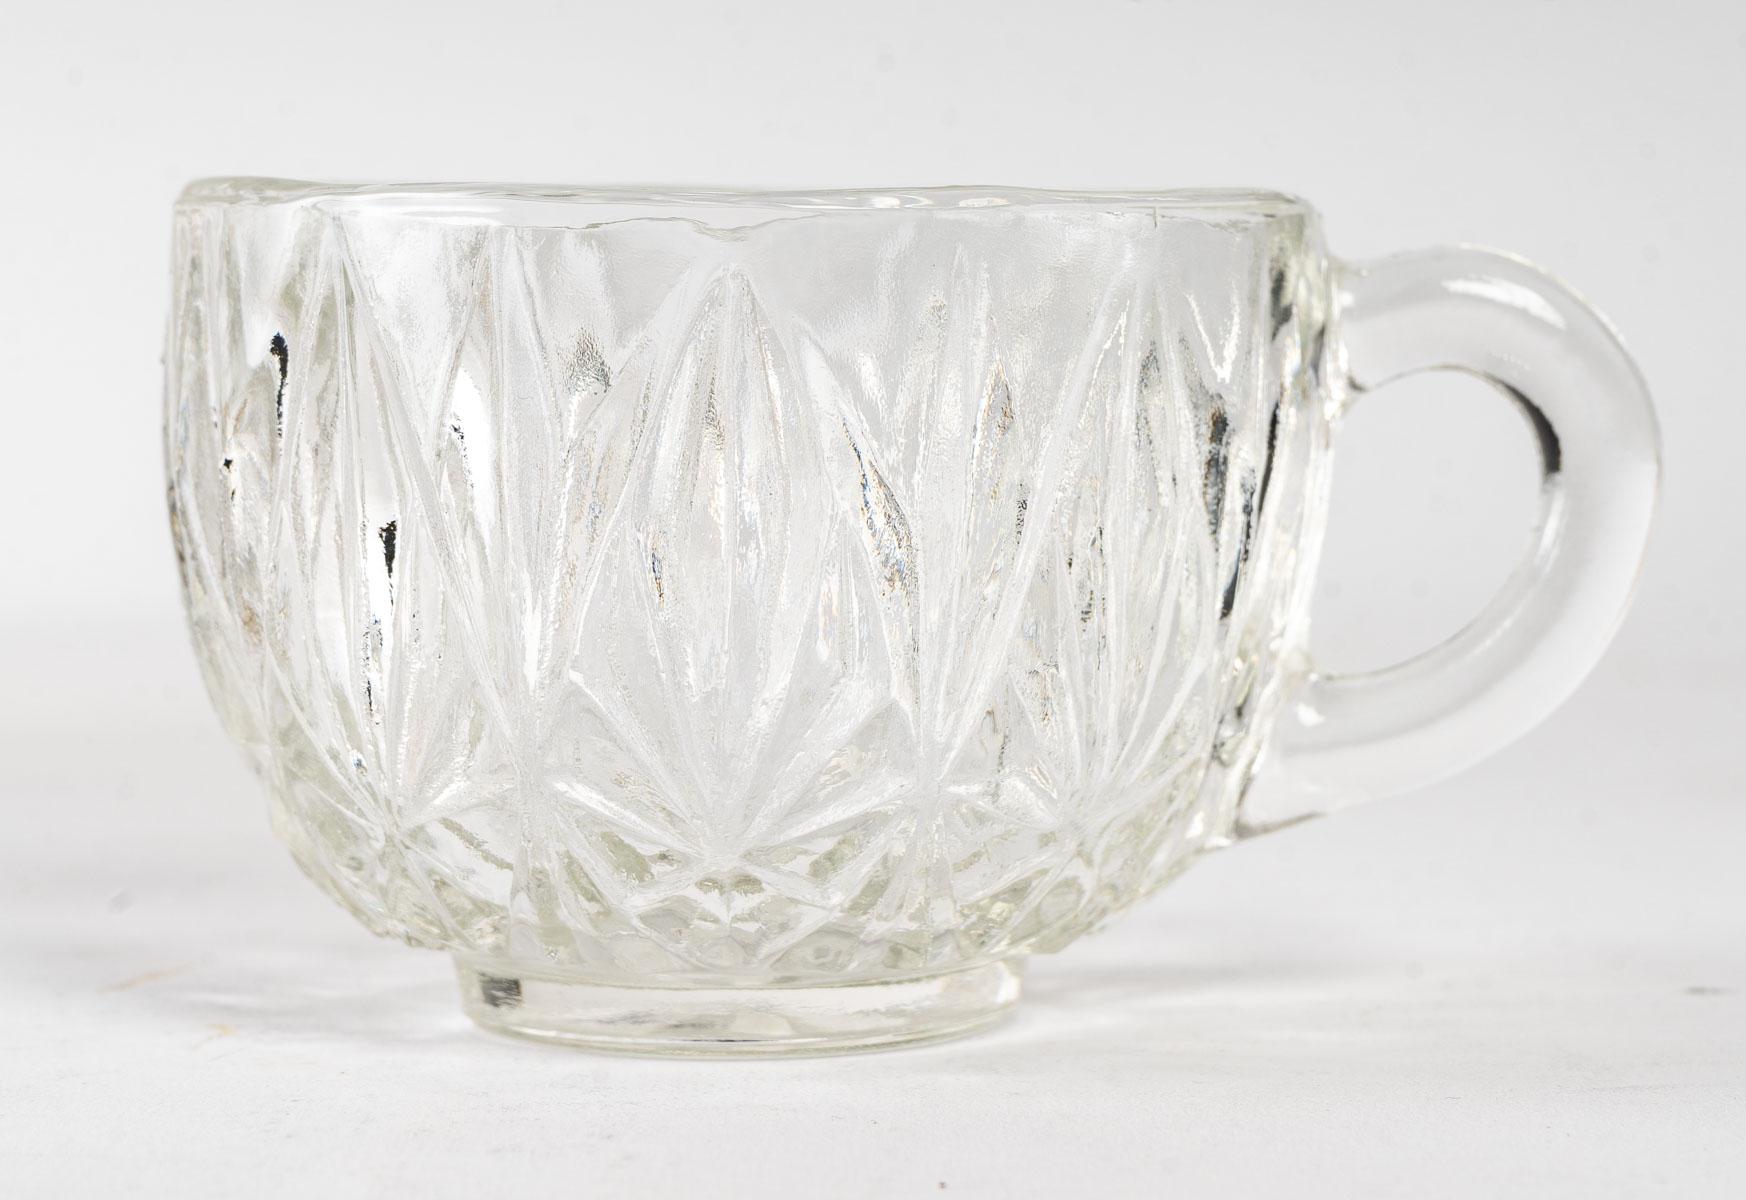 Kristallpunschtasse, 1950er Jahre, 8 Tassen
Maße: H: 17 cm, B: 28 cm, T: 28 cm.